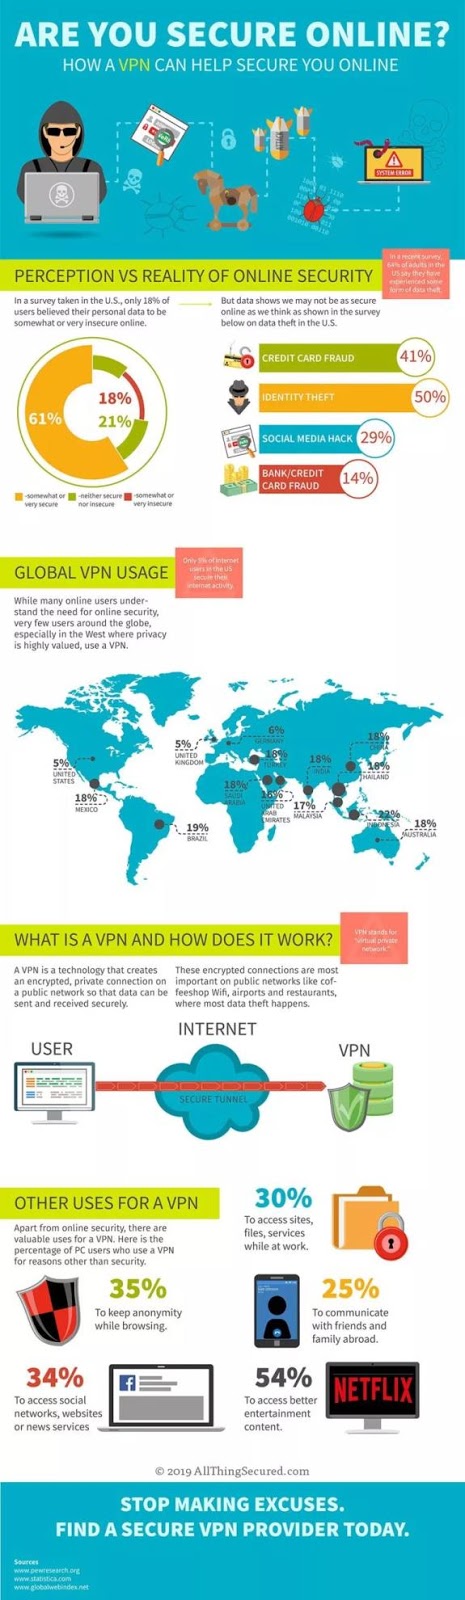 VPN Benefits for Internet Security